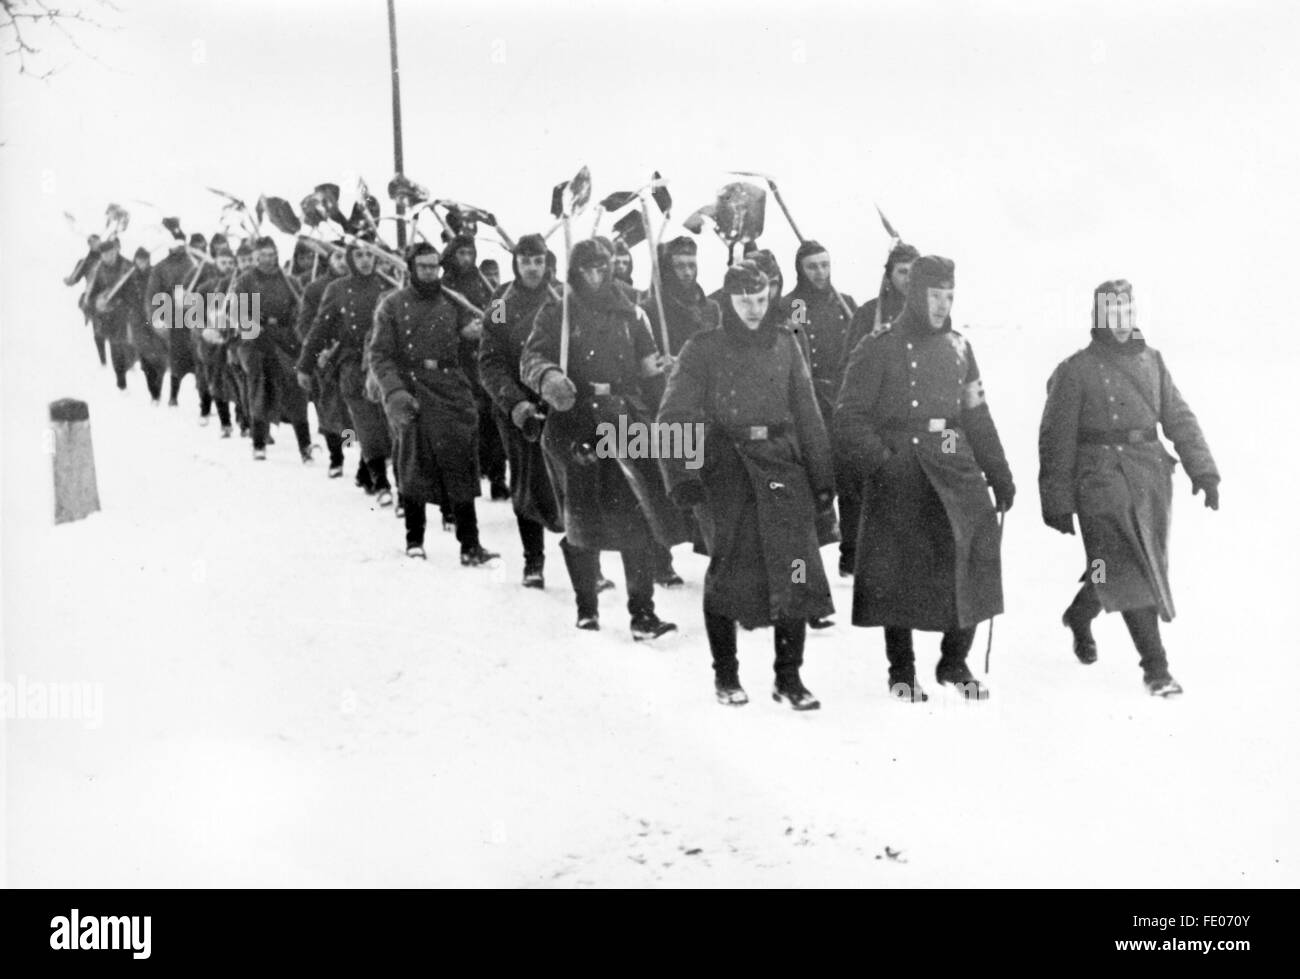 Das Nazi-Propagandafilm zeigt eine Gruppe von Männern der Todt-Organisation im verschneiten Winter. Das Foto wurde im Februar 1940 herausgegeben. Fotoarchiv für Zeitgeschichtee - KEINE ÜBERWEISUNG - Stockfoto